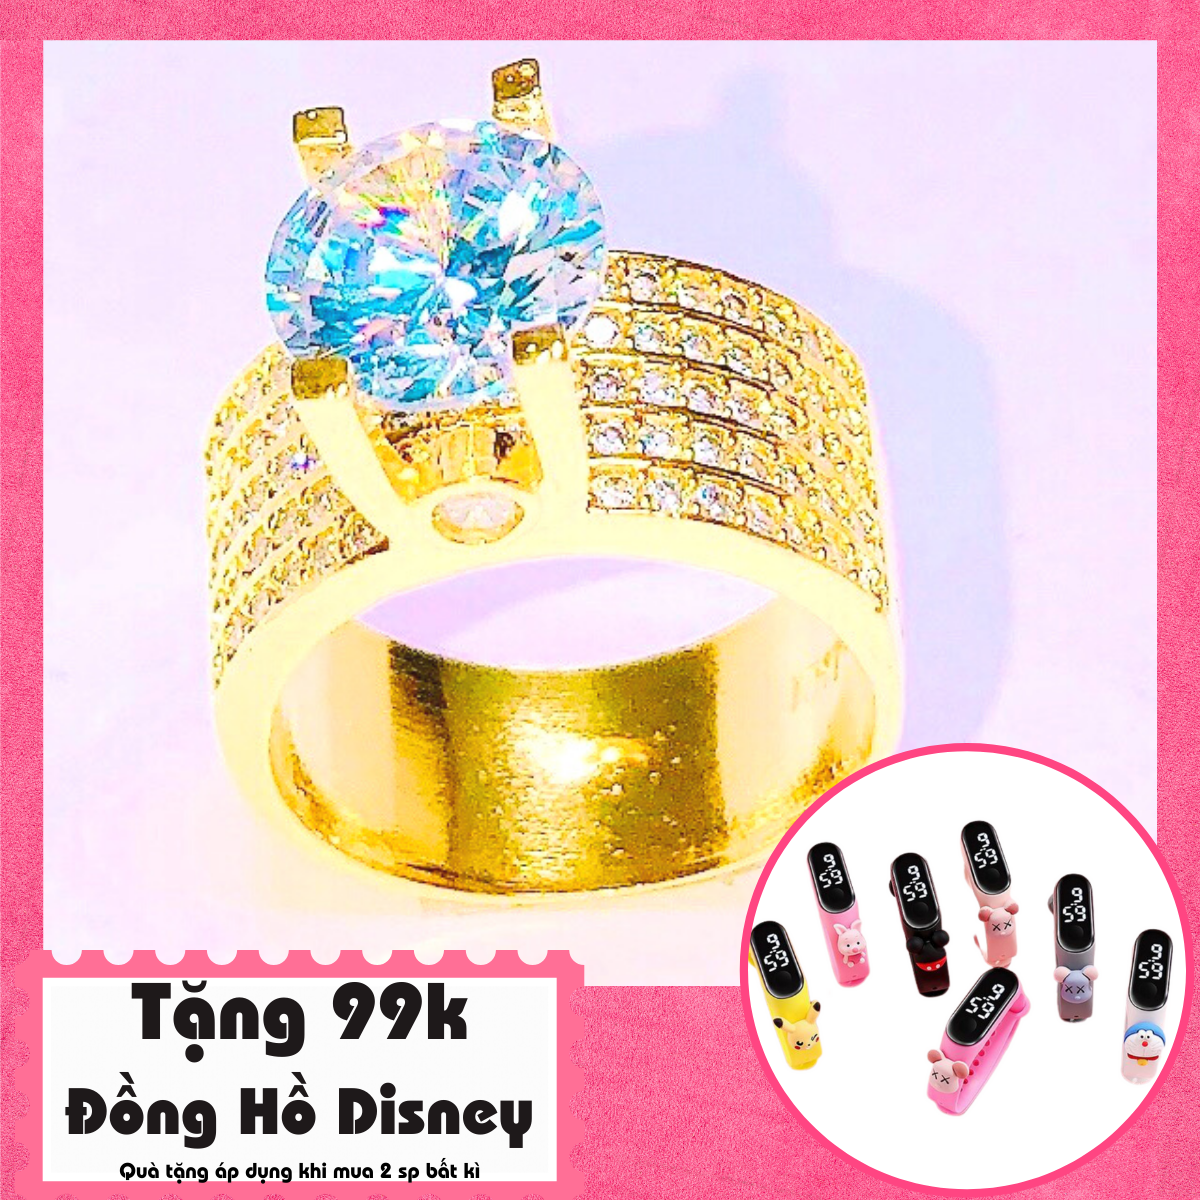 Top 6 nhẫn nữ vàng trắng dưới 3 triệu đem lại sự quý phái, thời thượng -  Thegioididong.com